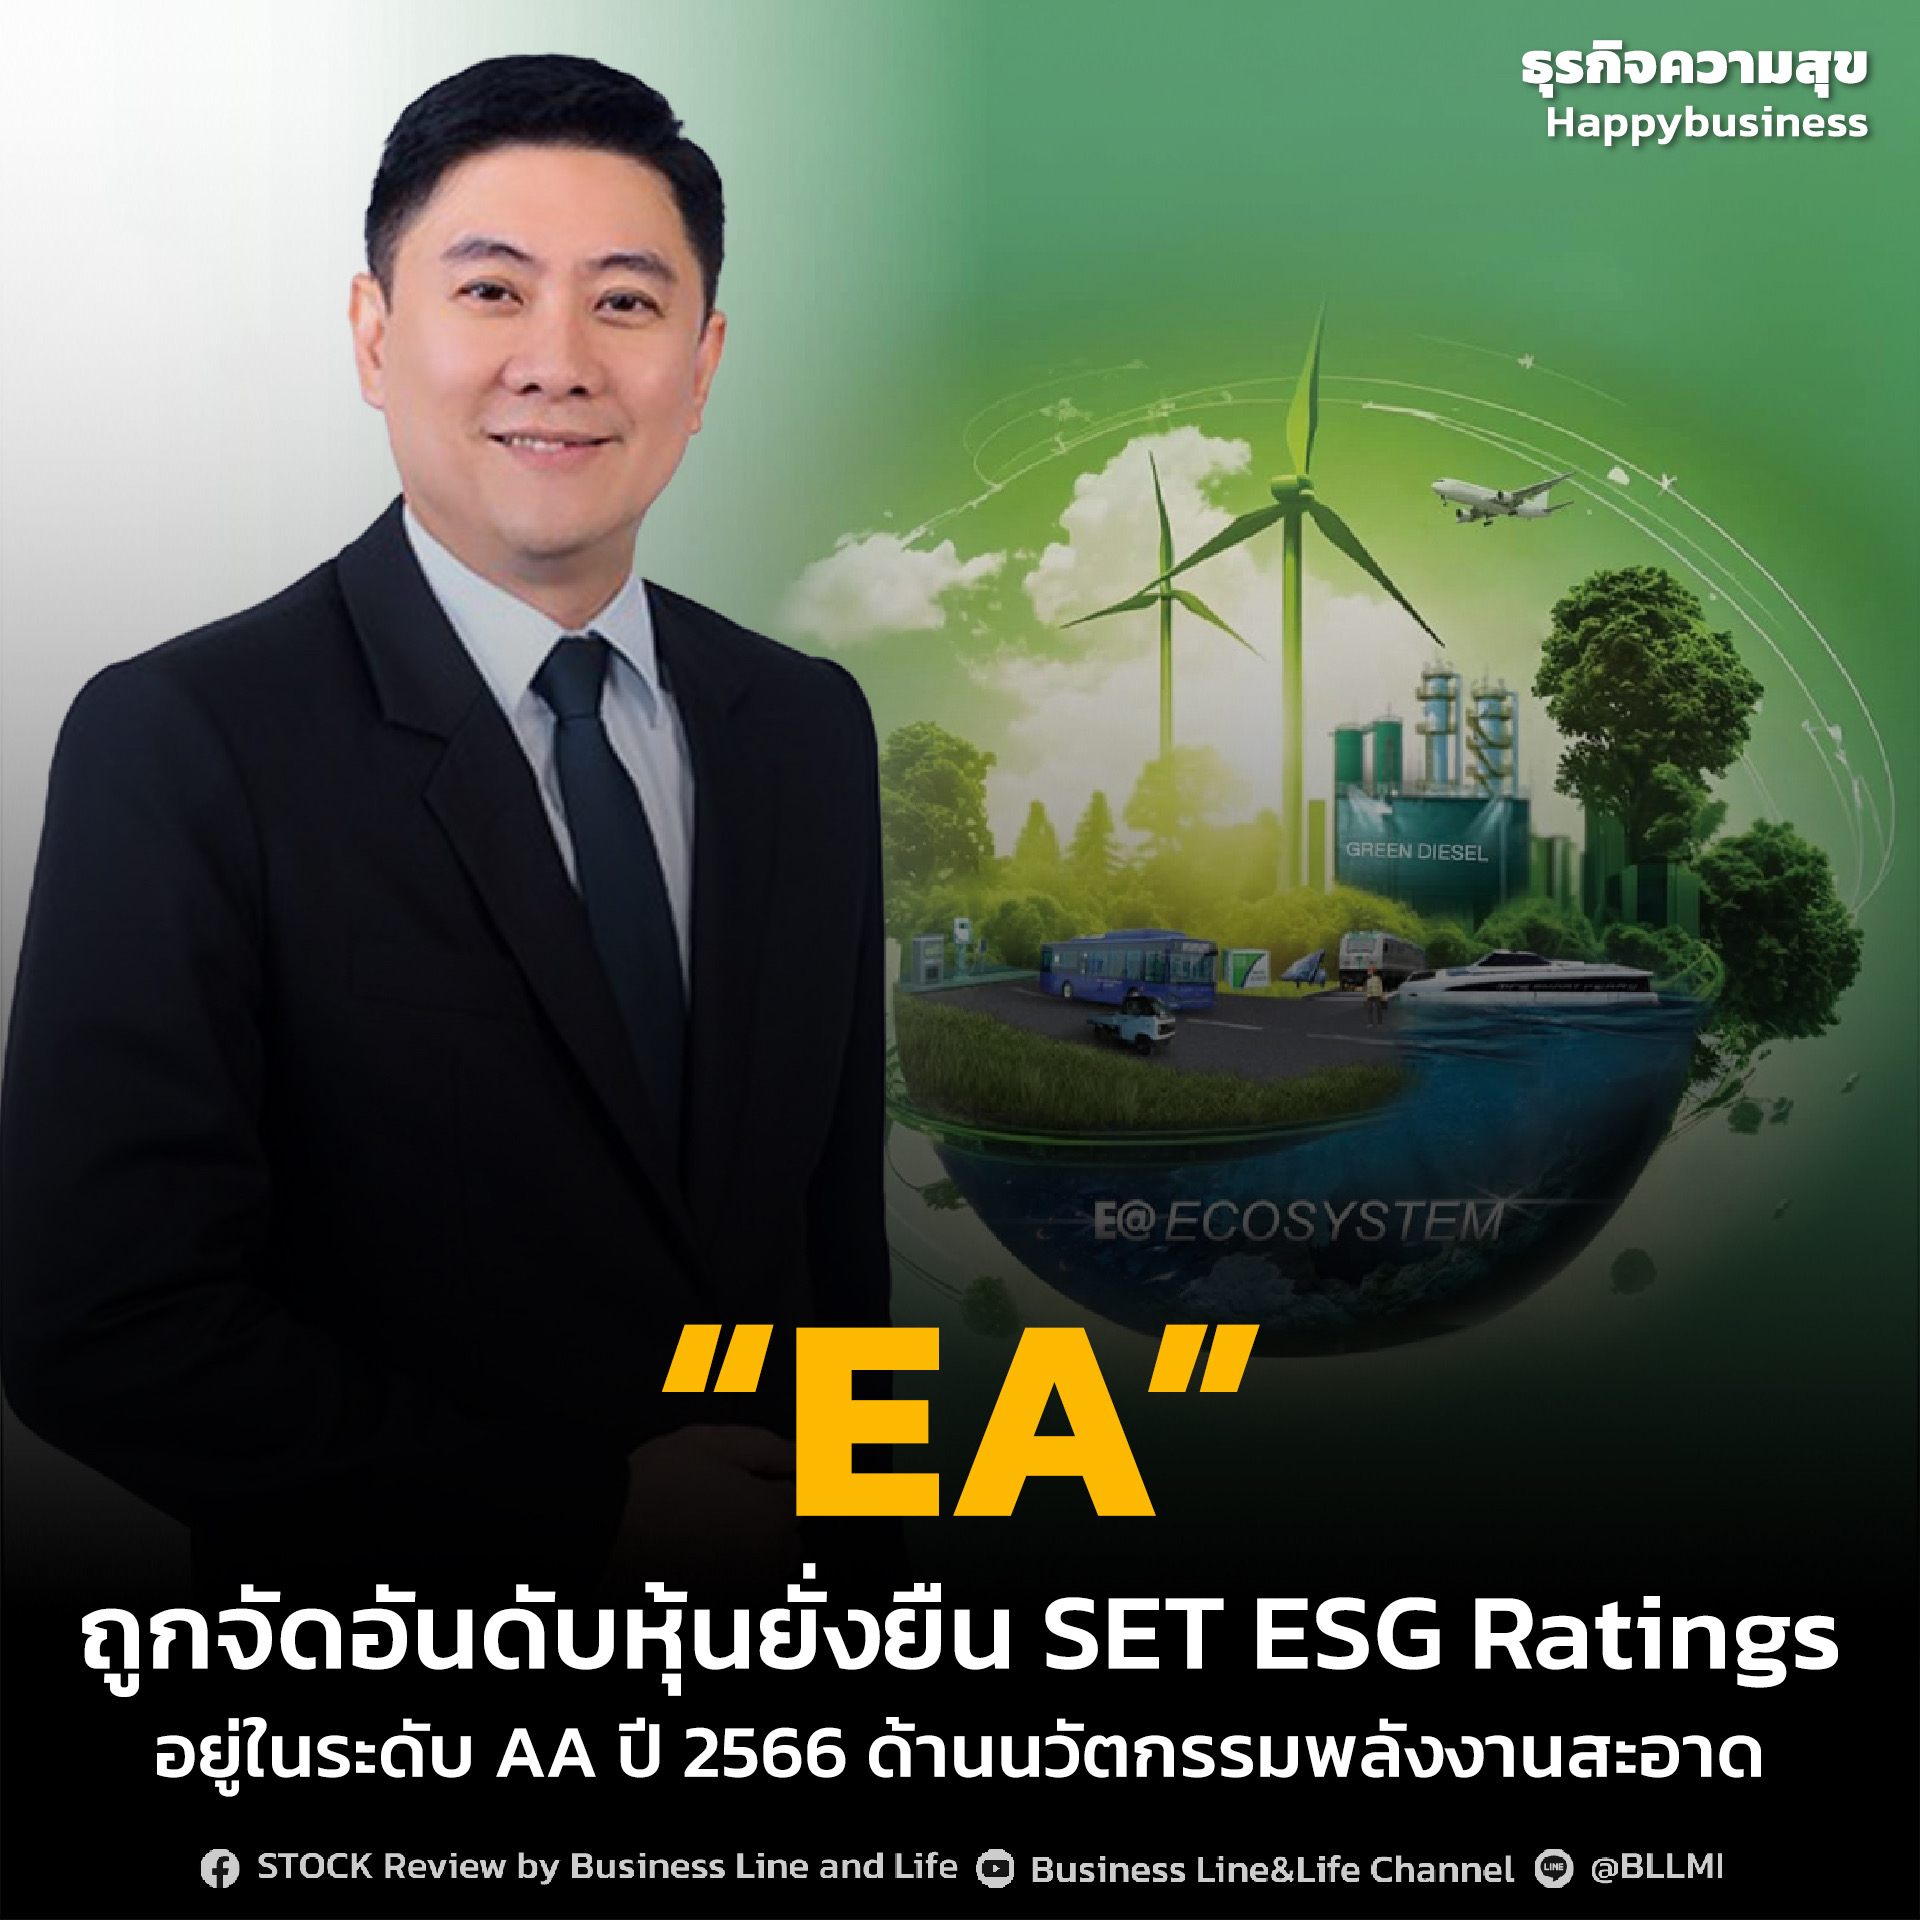 “EA” ถูกจัดอันดับหุ้นยั่งยืน SET ESG Ratings อยู่ในระดับ AA ปี 2566 ด้านนวัตกรรมพลังงานสะอาด